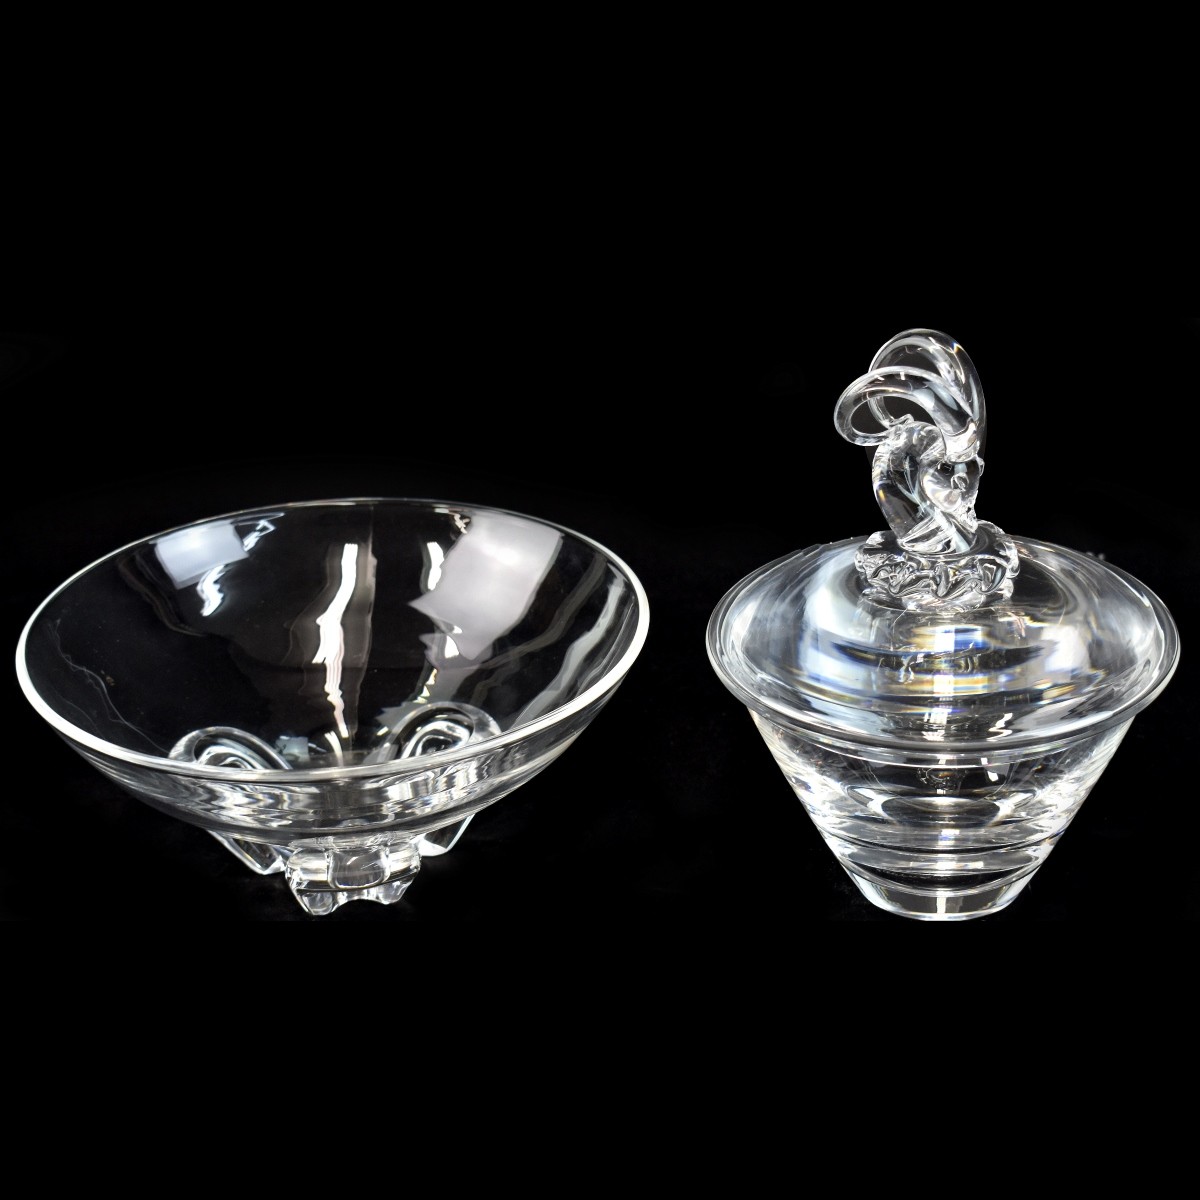 Two (2) Vintage Steuben Crystal Tableware